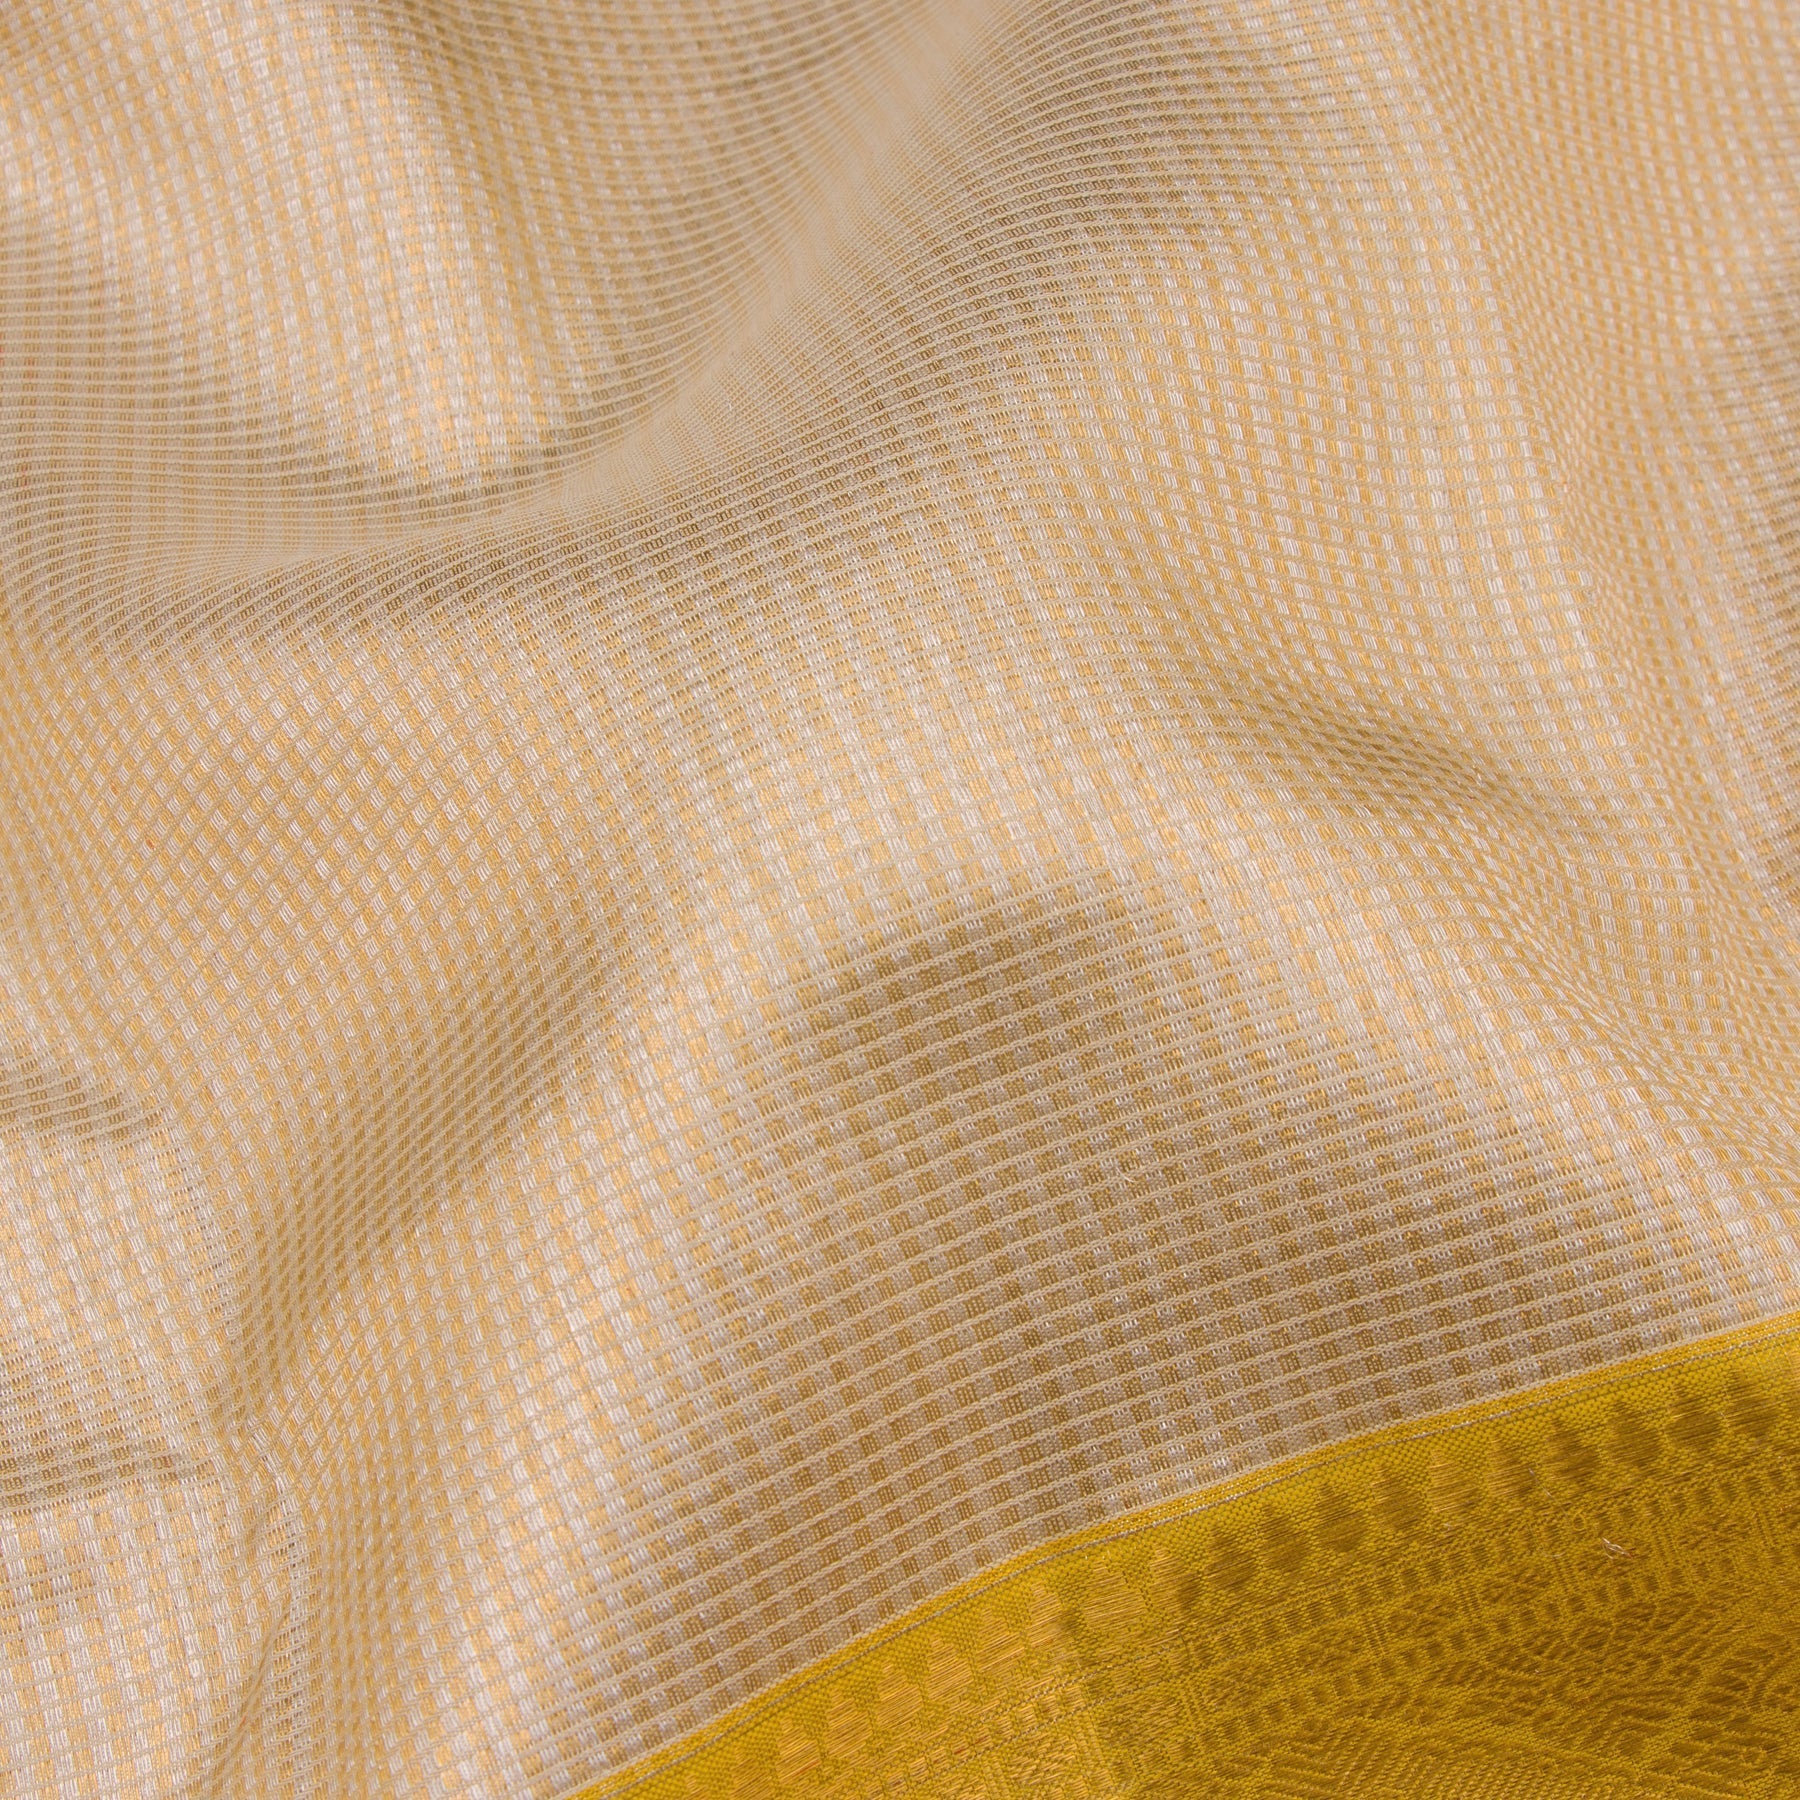 Kanakavalli Kanjivaram Silk Sari 23-110-HS001-02953 - Fabric View